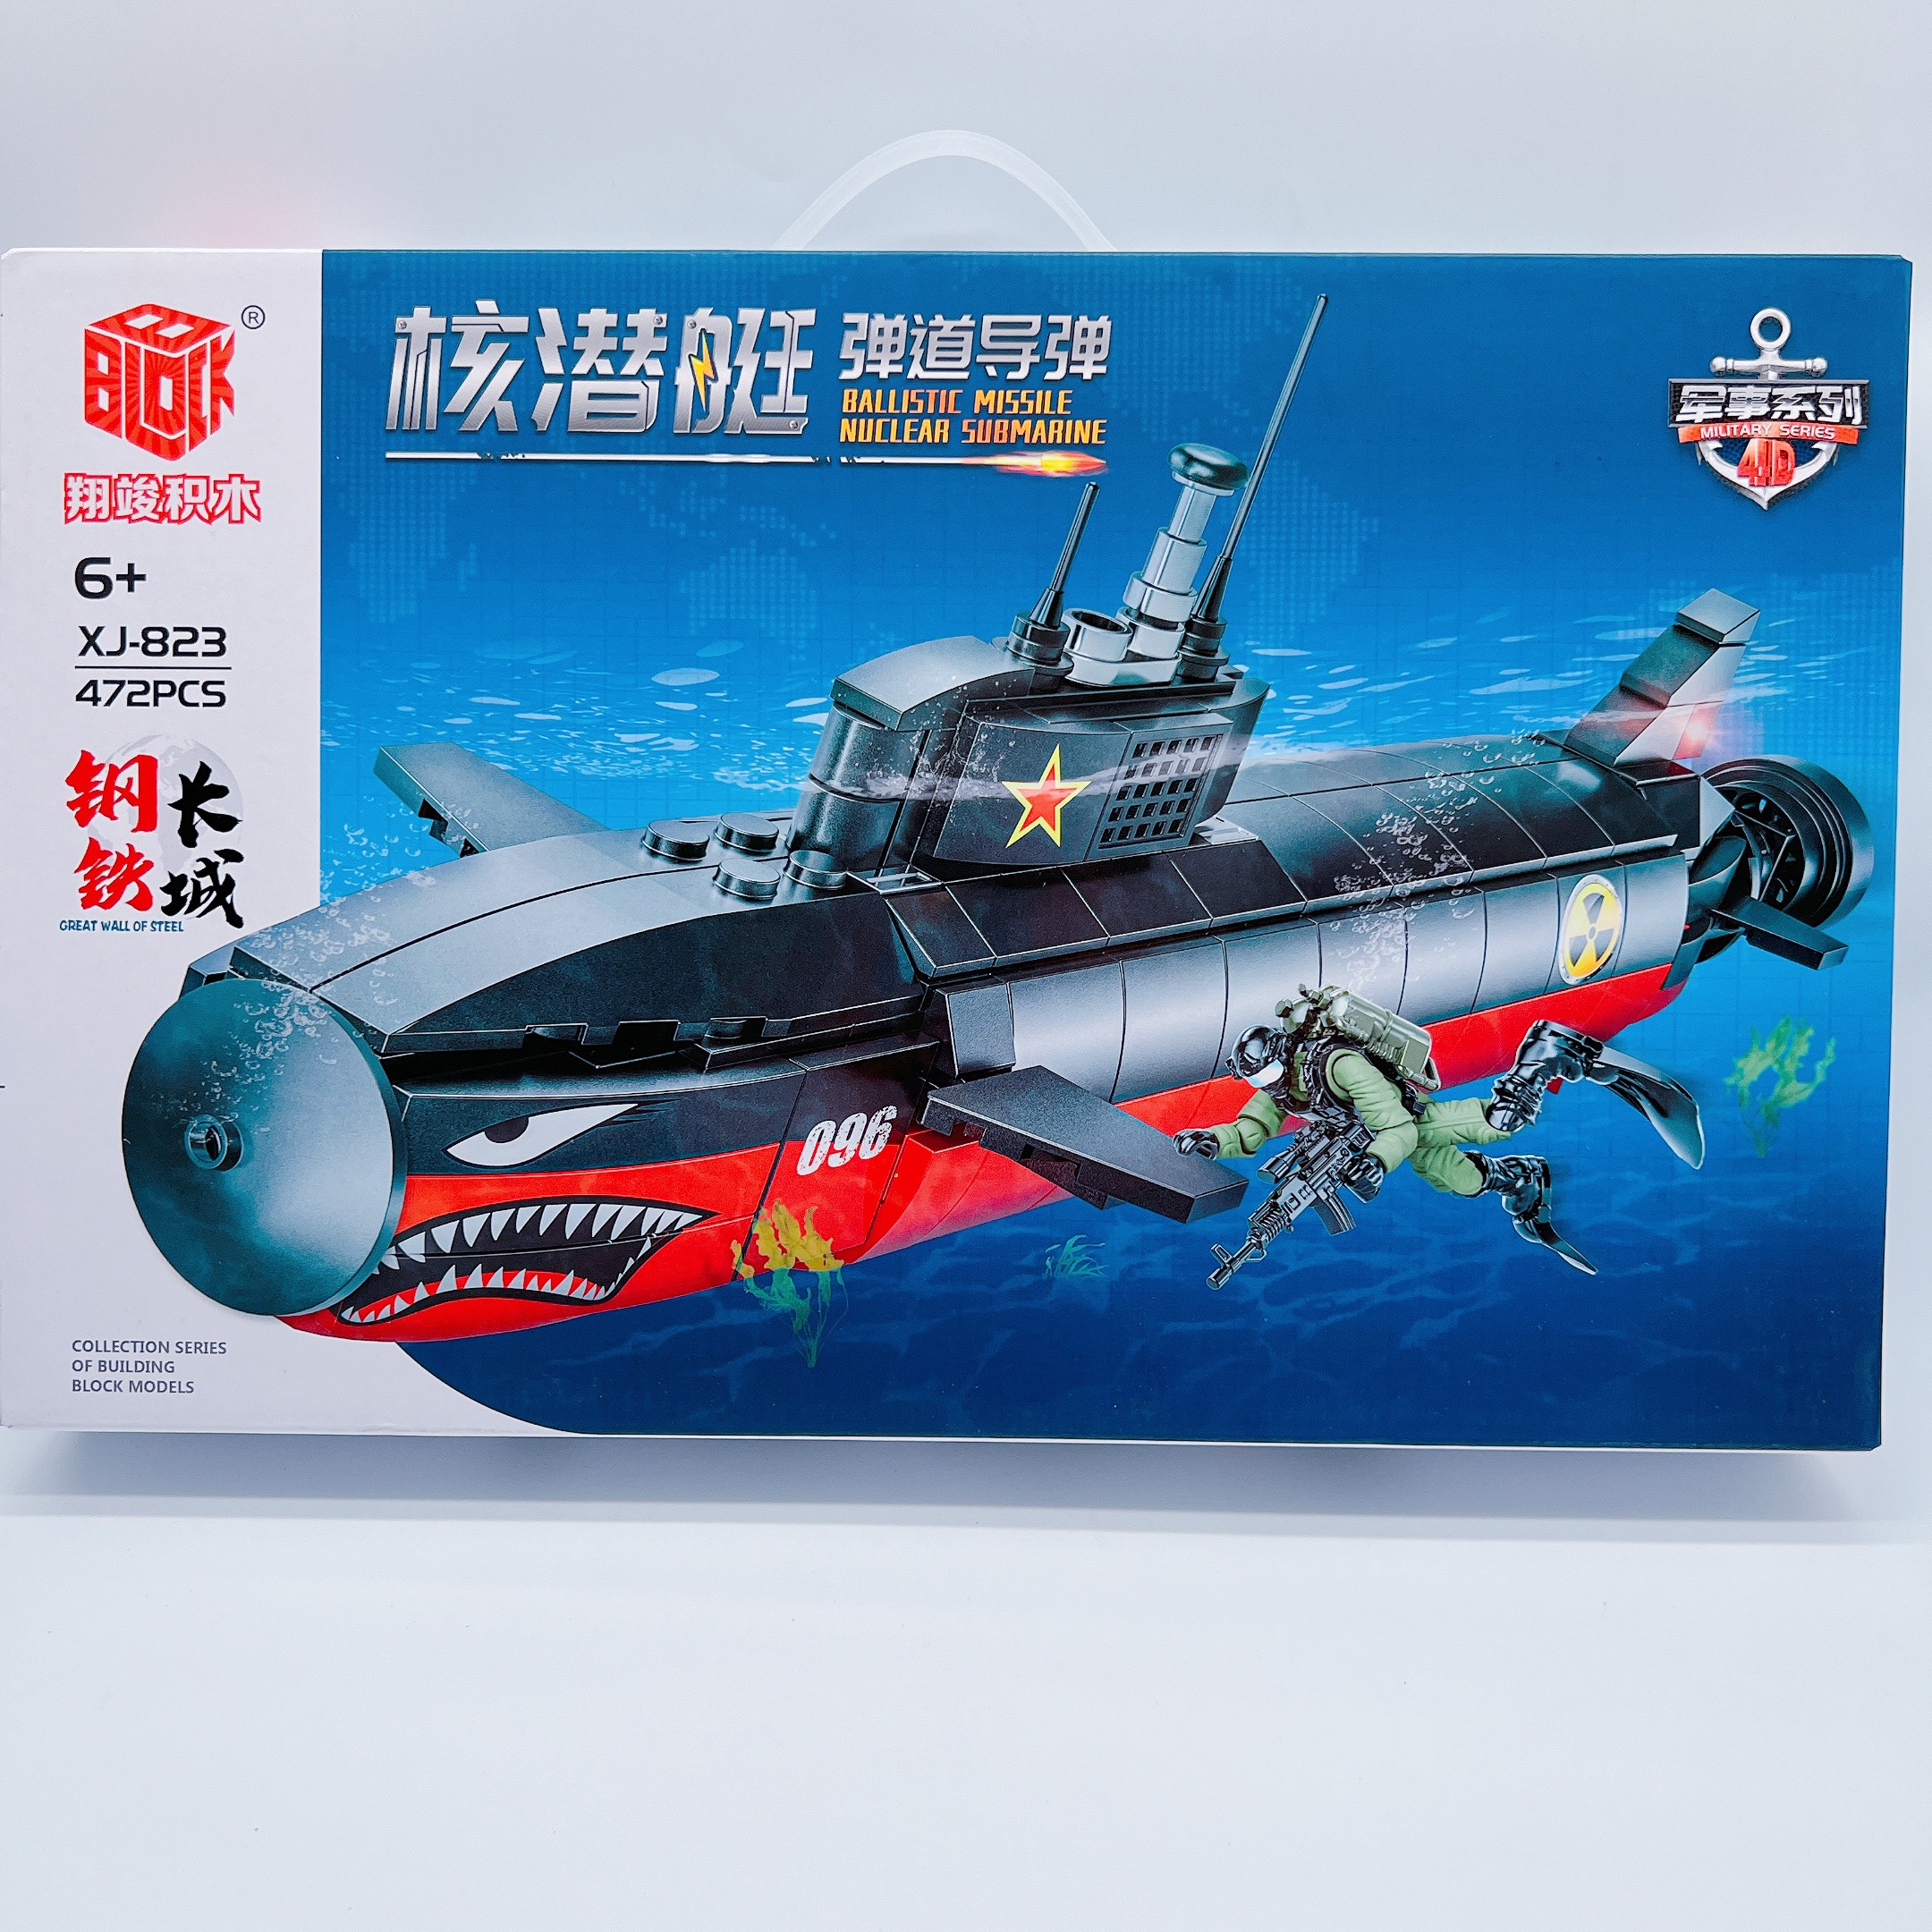 Lego tàu chiến, đồ chơi lego mini tàu ngầm cá mập XJ-823 472 pcs siêu hấp dẫn cho bé nhựa abs loại 1 - Quà tặng kỹ năng cho bé